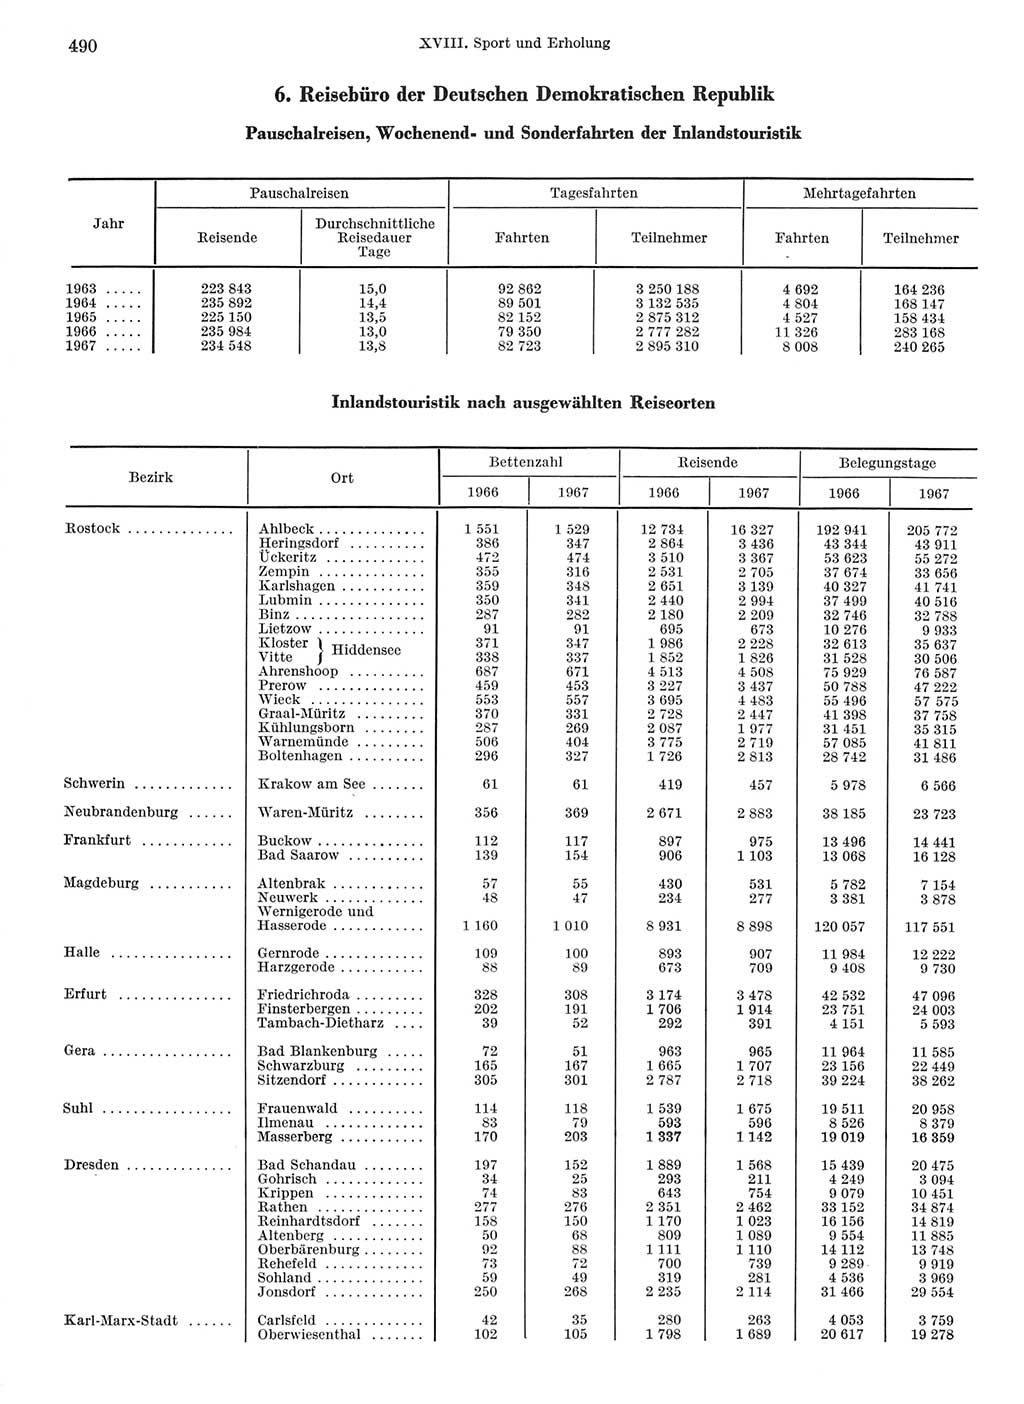 Statistisches Jahrbuch der Deutschen Demokratischen Republik (DDR) 1968, Seite 490 (Stat. Jb. DDR 1968, S. 490)